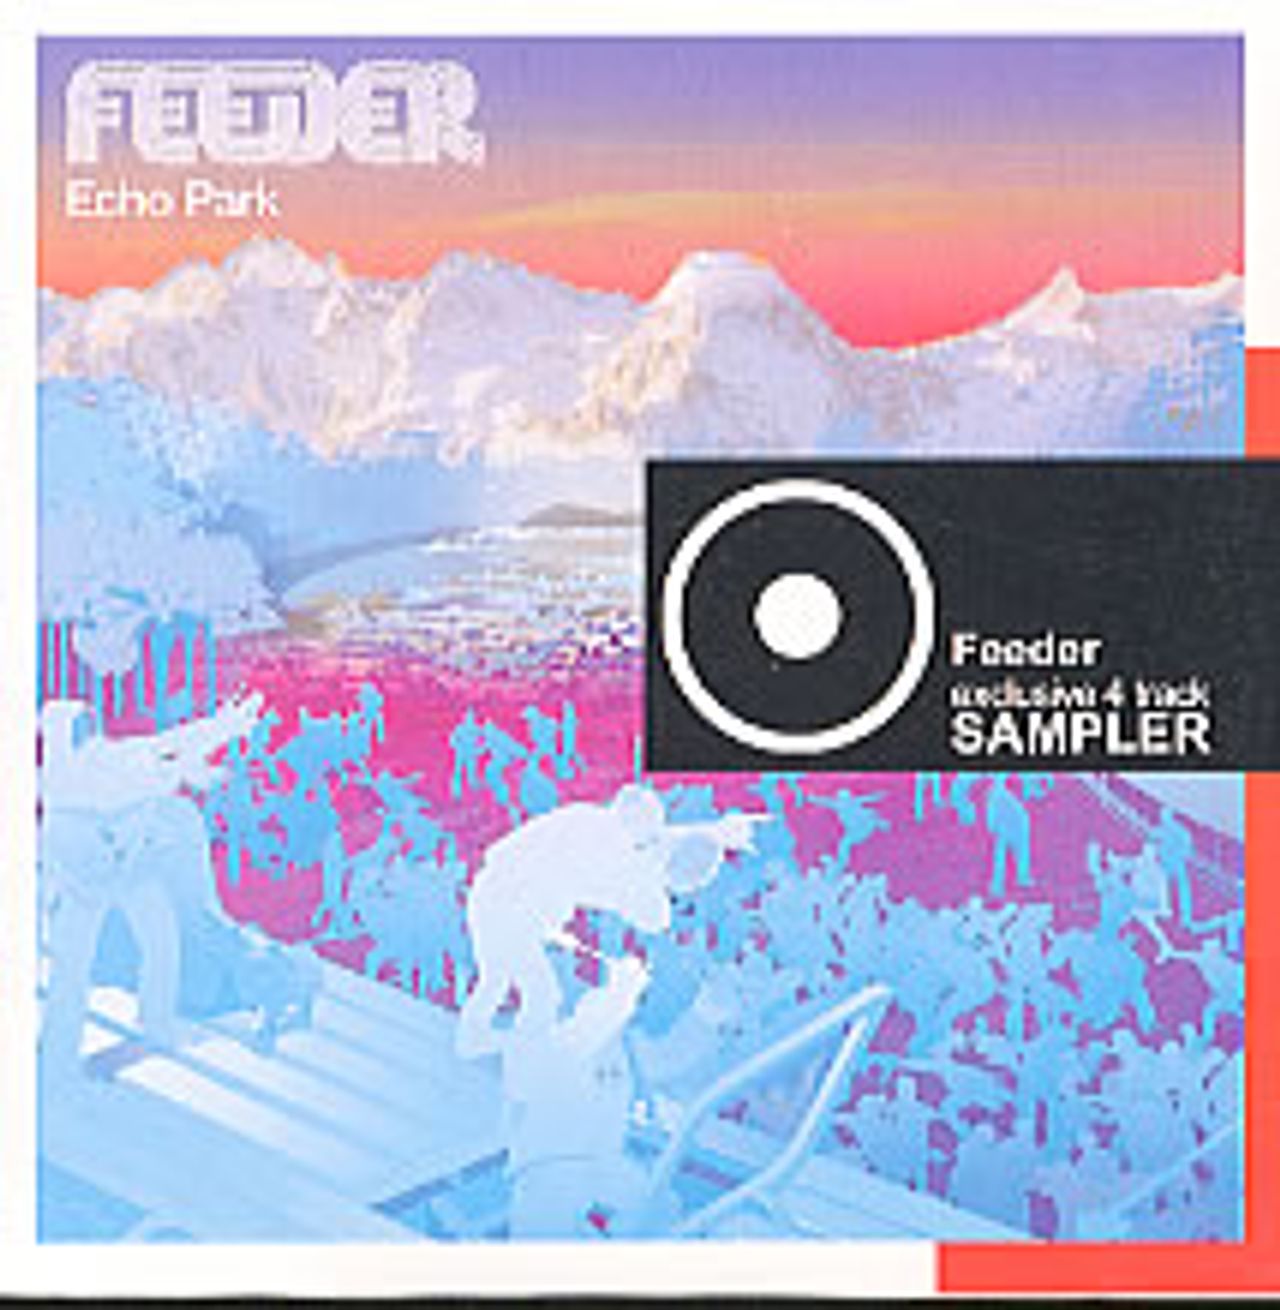 Feeder Echo Park UK Promo CD single — RareVinyl.com